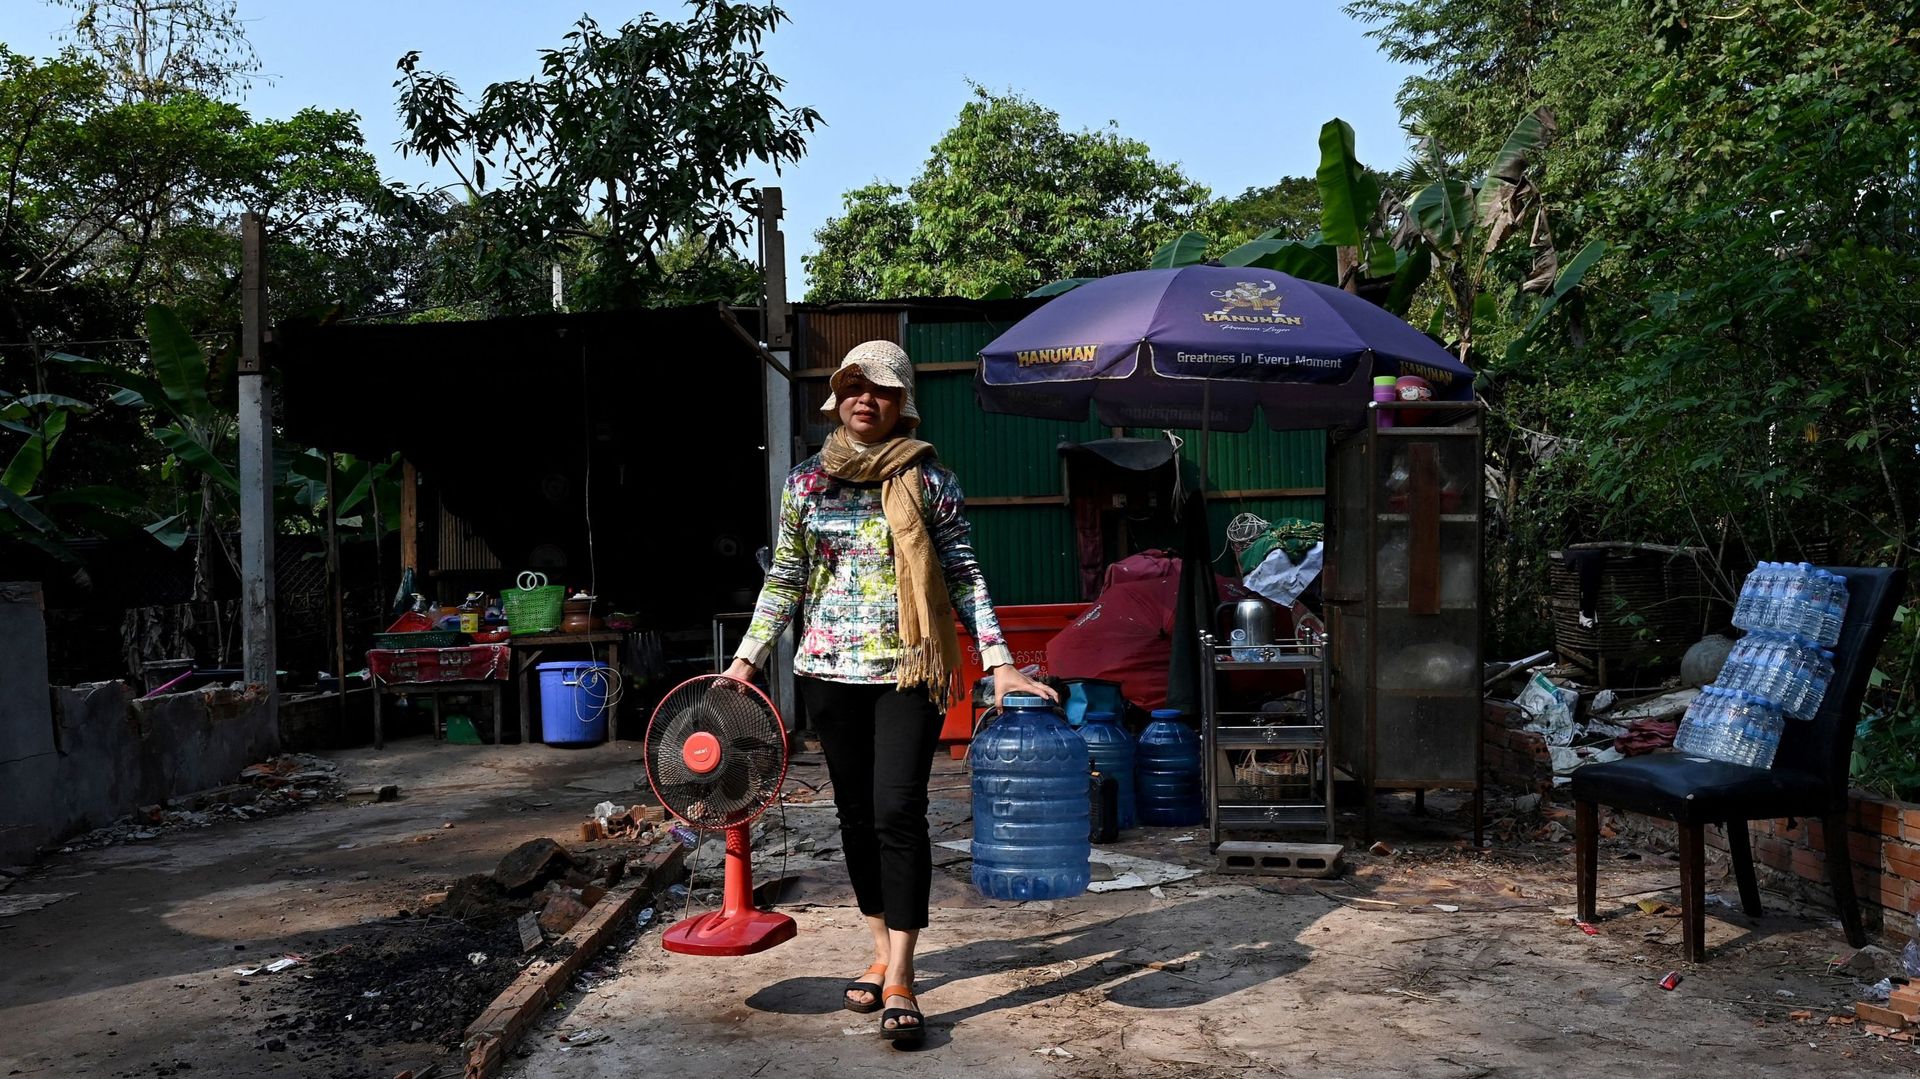 Bien loin des décors de cartes postales, les conditions de vie des habitants d’Angkor laissent à désirer